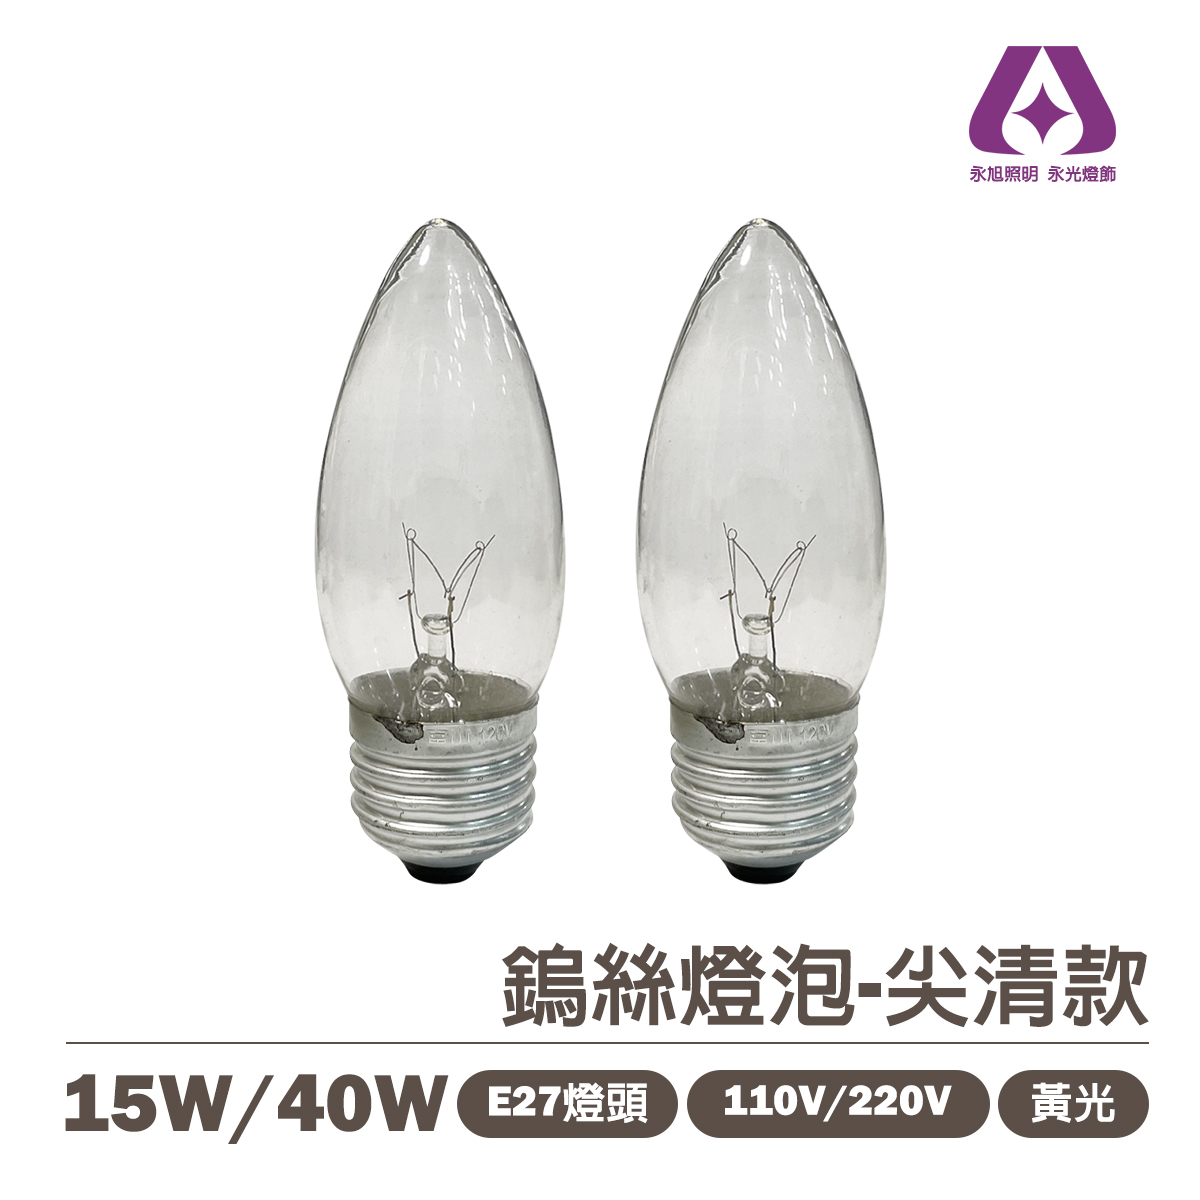 E27 15W/40W 傳統鎢絲燈泡 尖清 電壓110V  神明廳可用